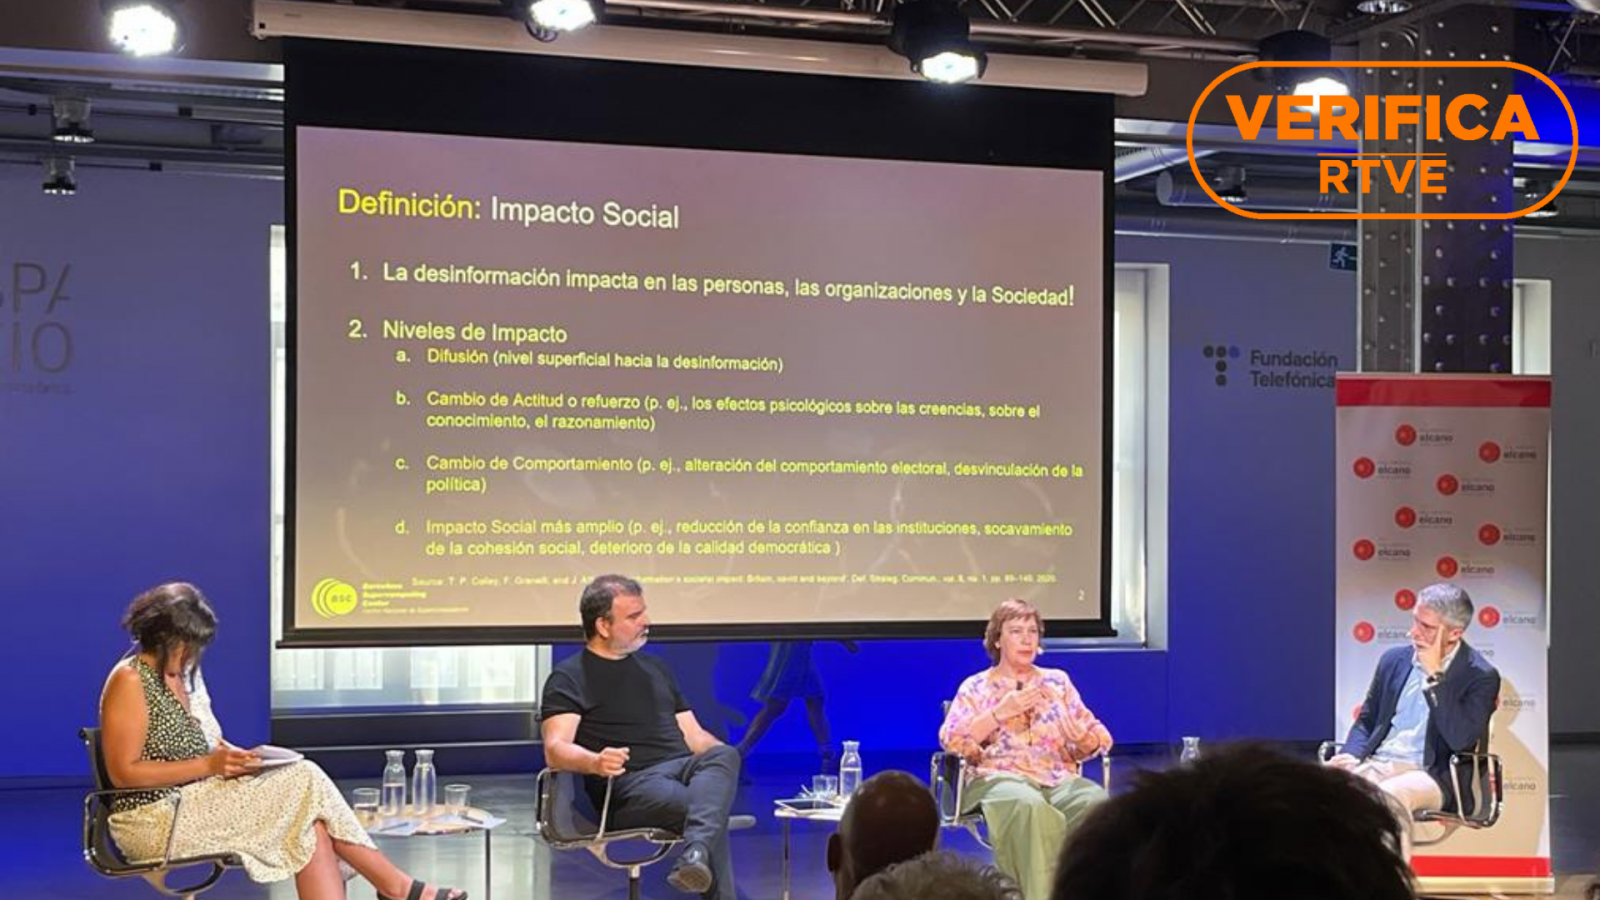 Presentación del informe del proyecto Iberifier en la Fundación Telefónica de Madrid, con el sello VerificaRTVE en naranja